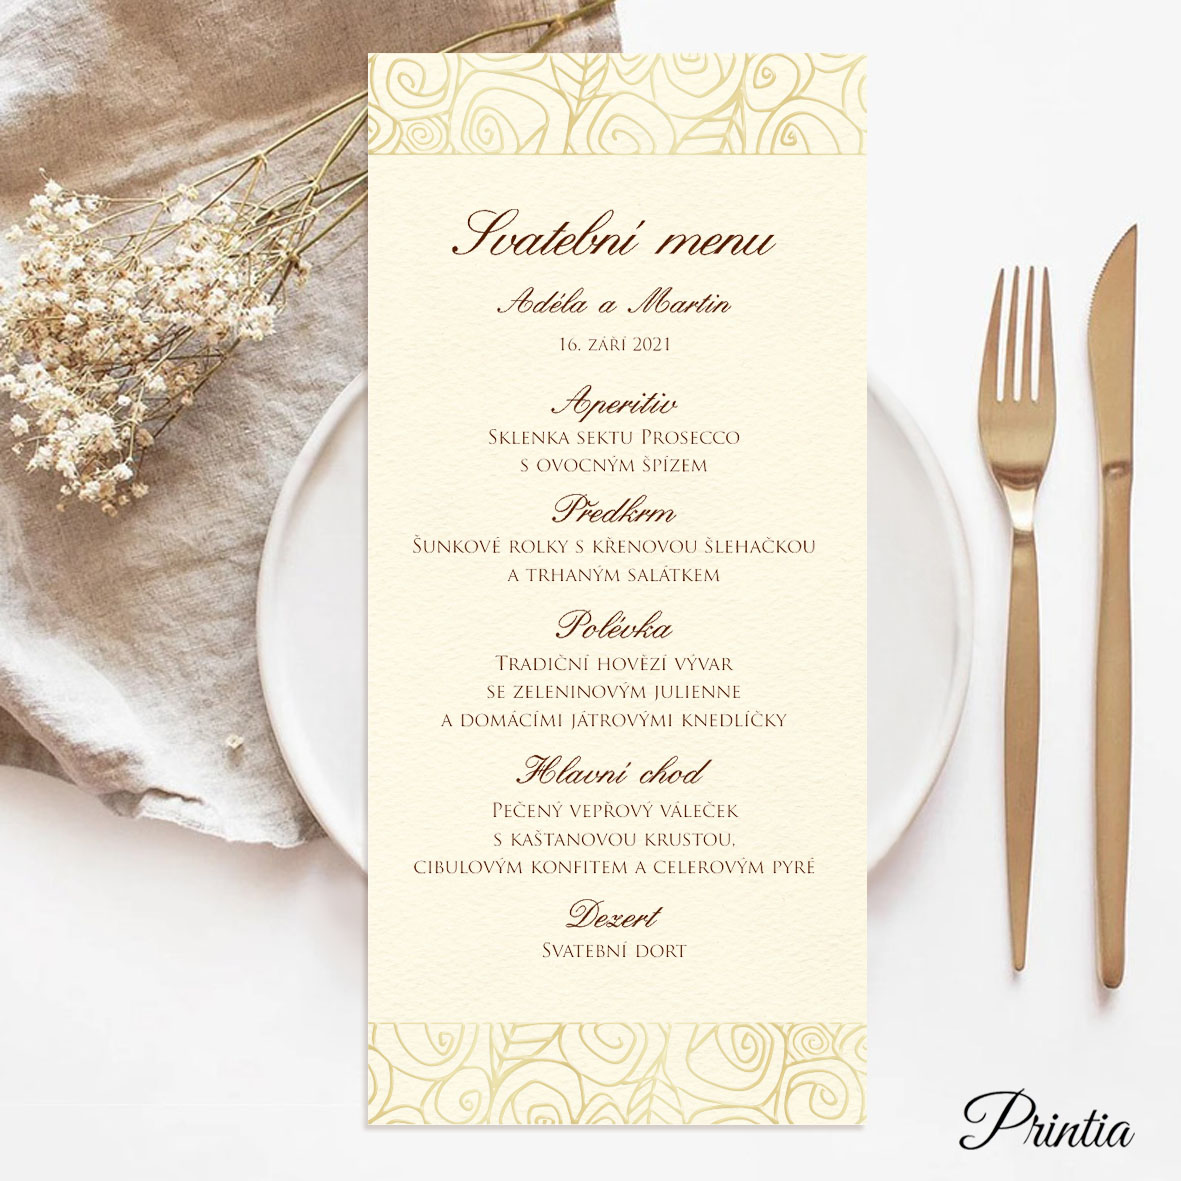 Wedding menu stylized flowers ornament